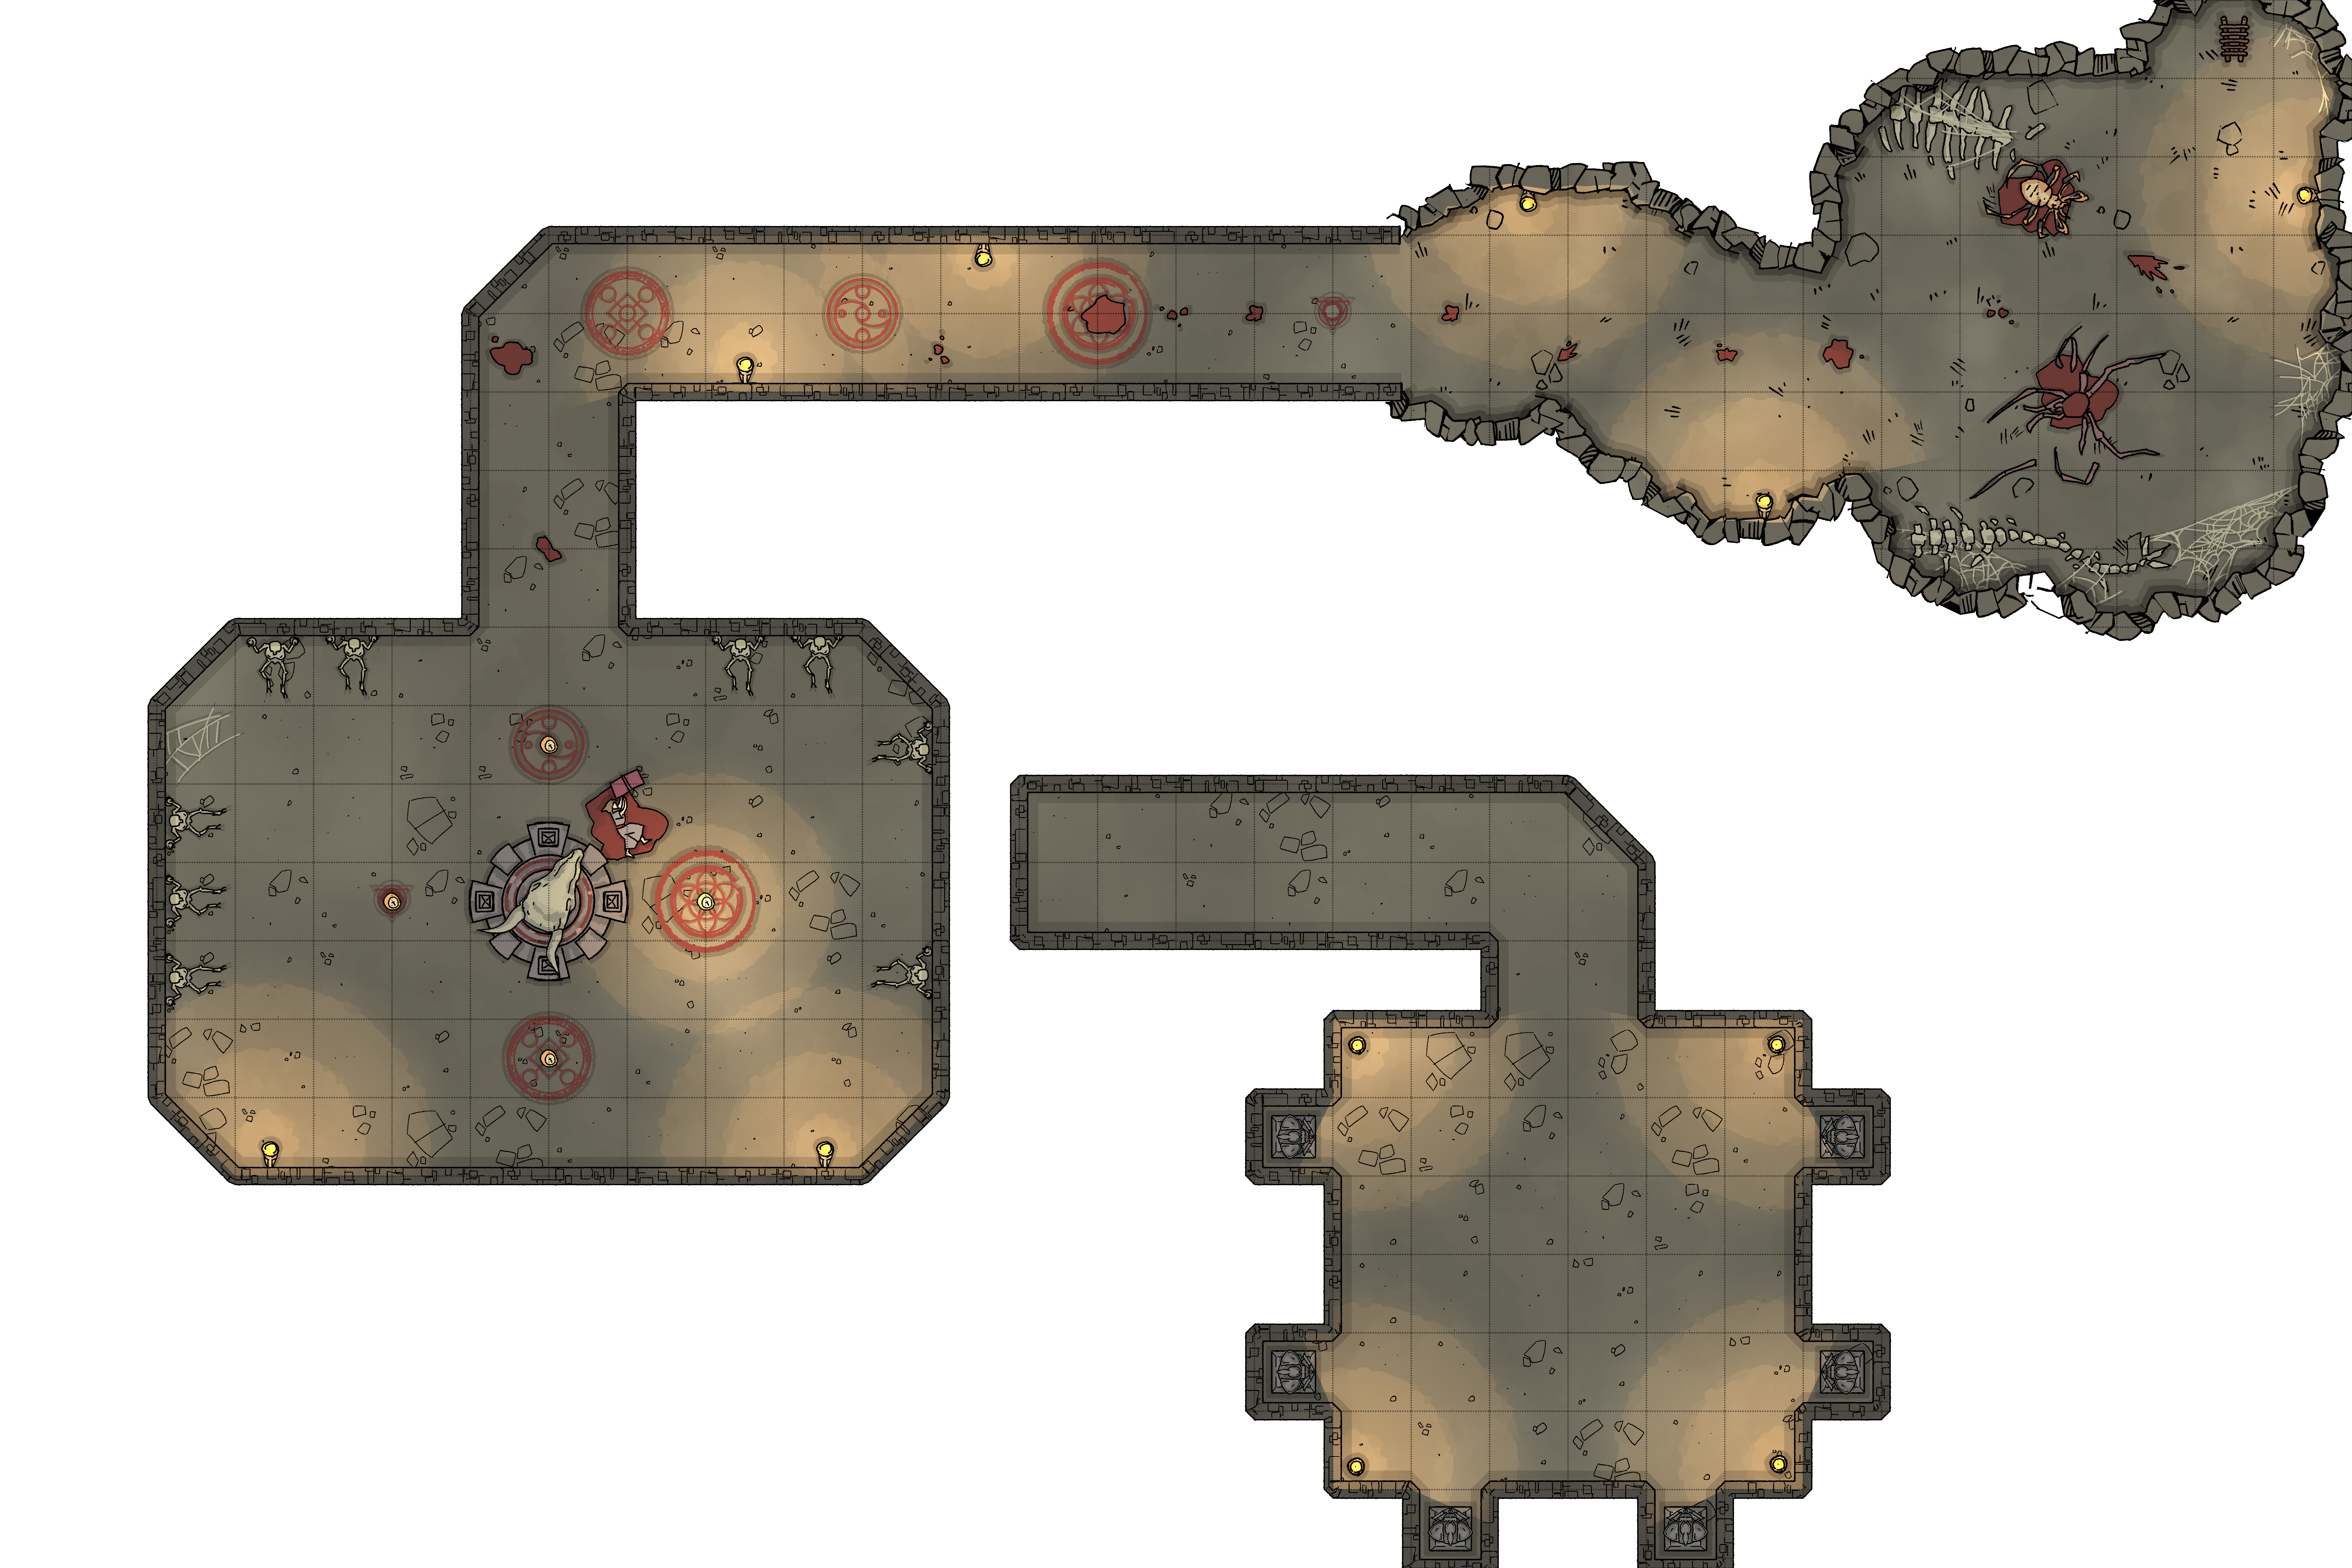 Dnd Underground Dungeon Map